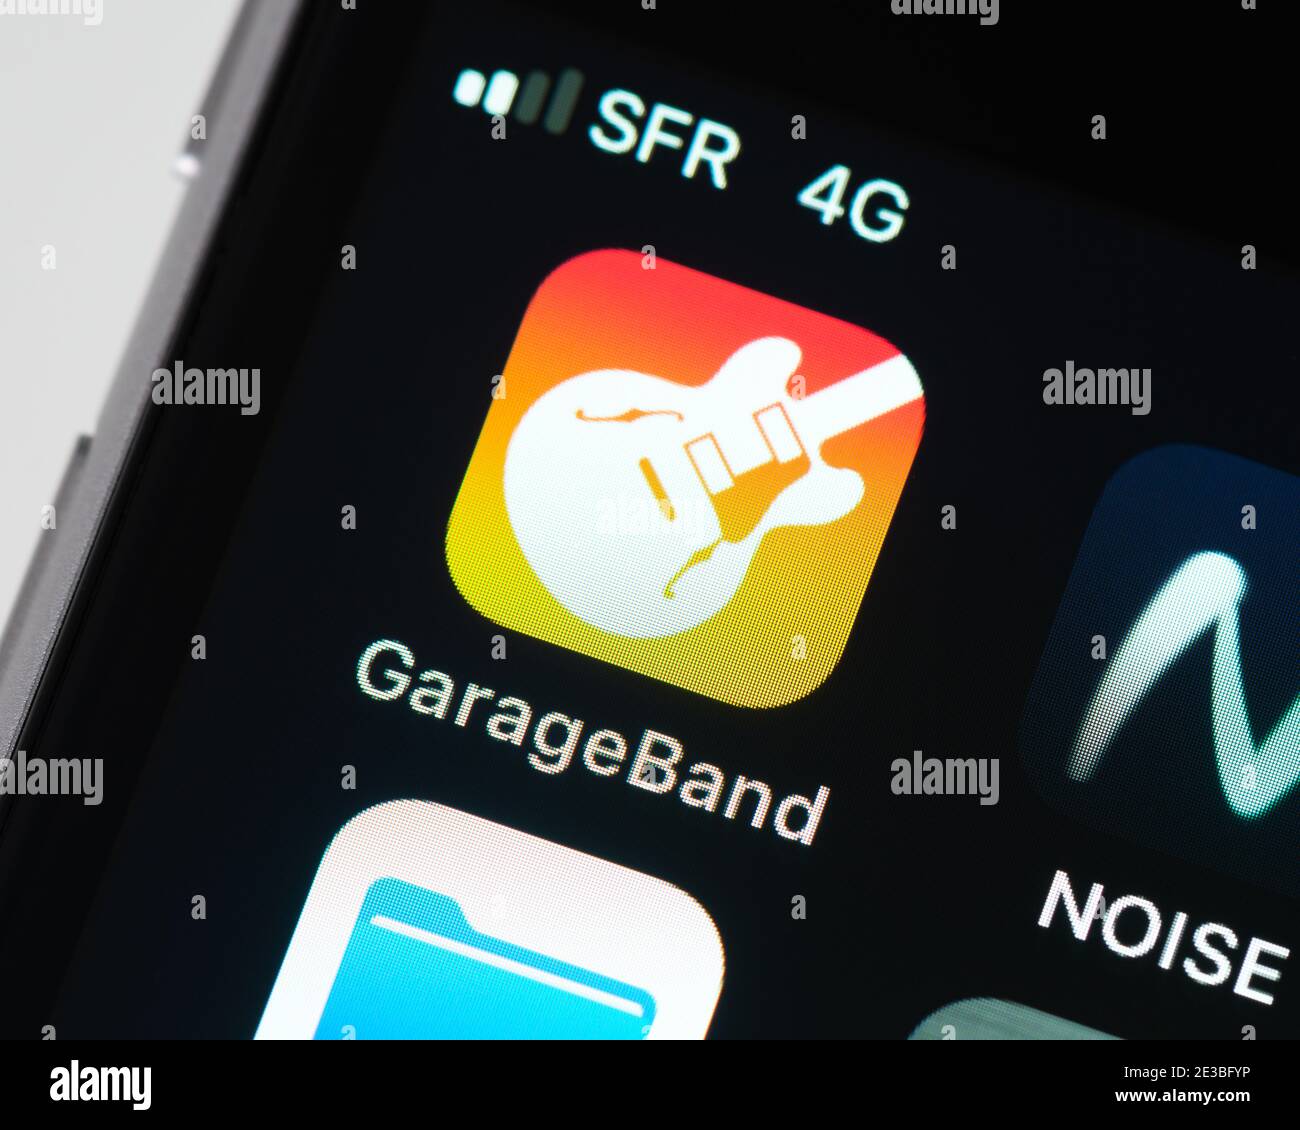 Icona dell'app GarageBand sulla schermata di Apple iPhone. GarageBand è una workstation audio digitale sviluppata da Apple. Foto Stock